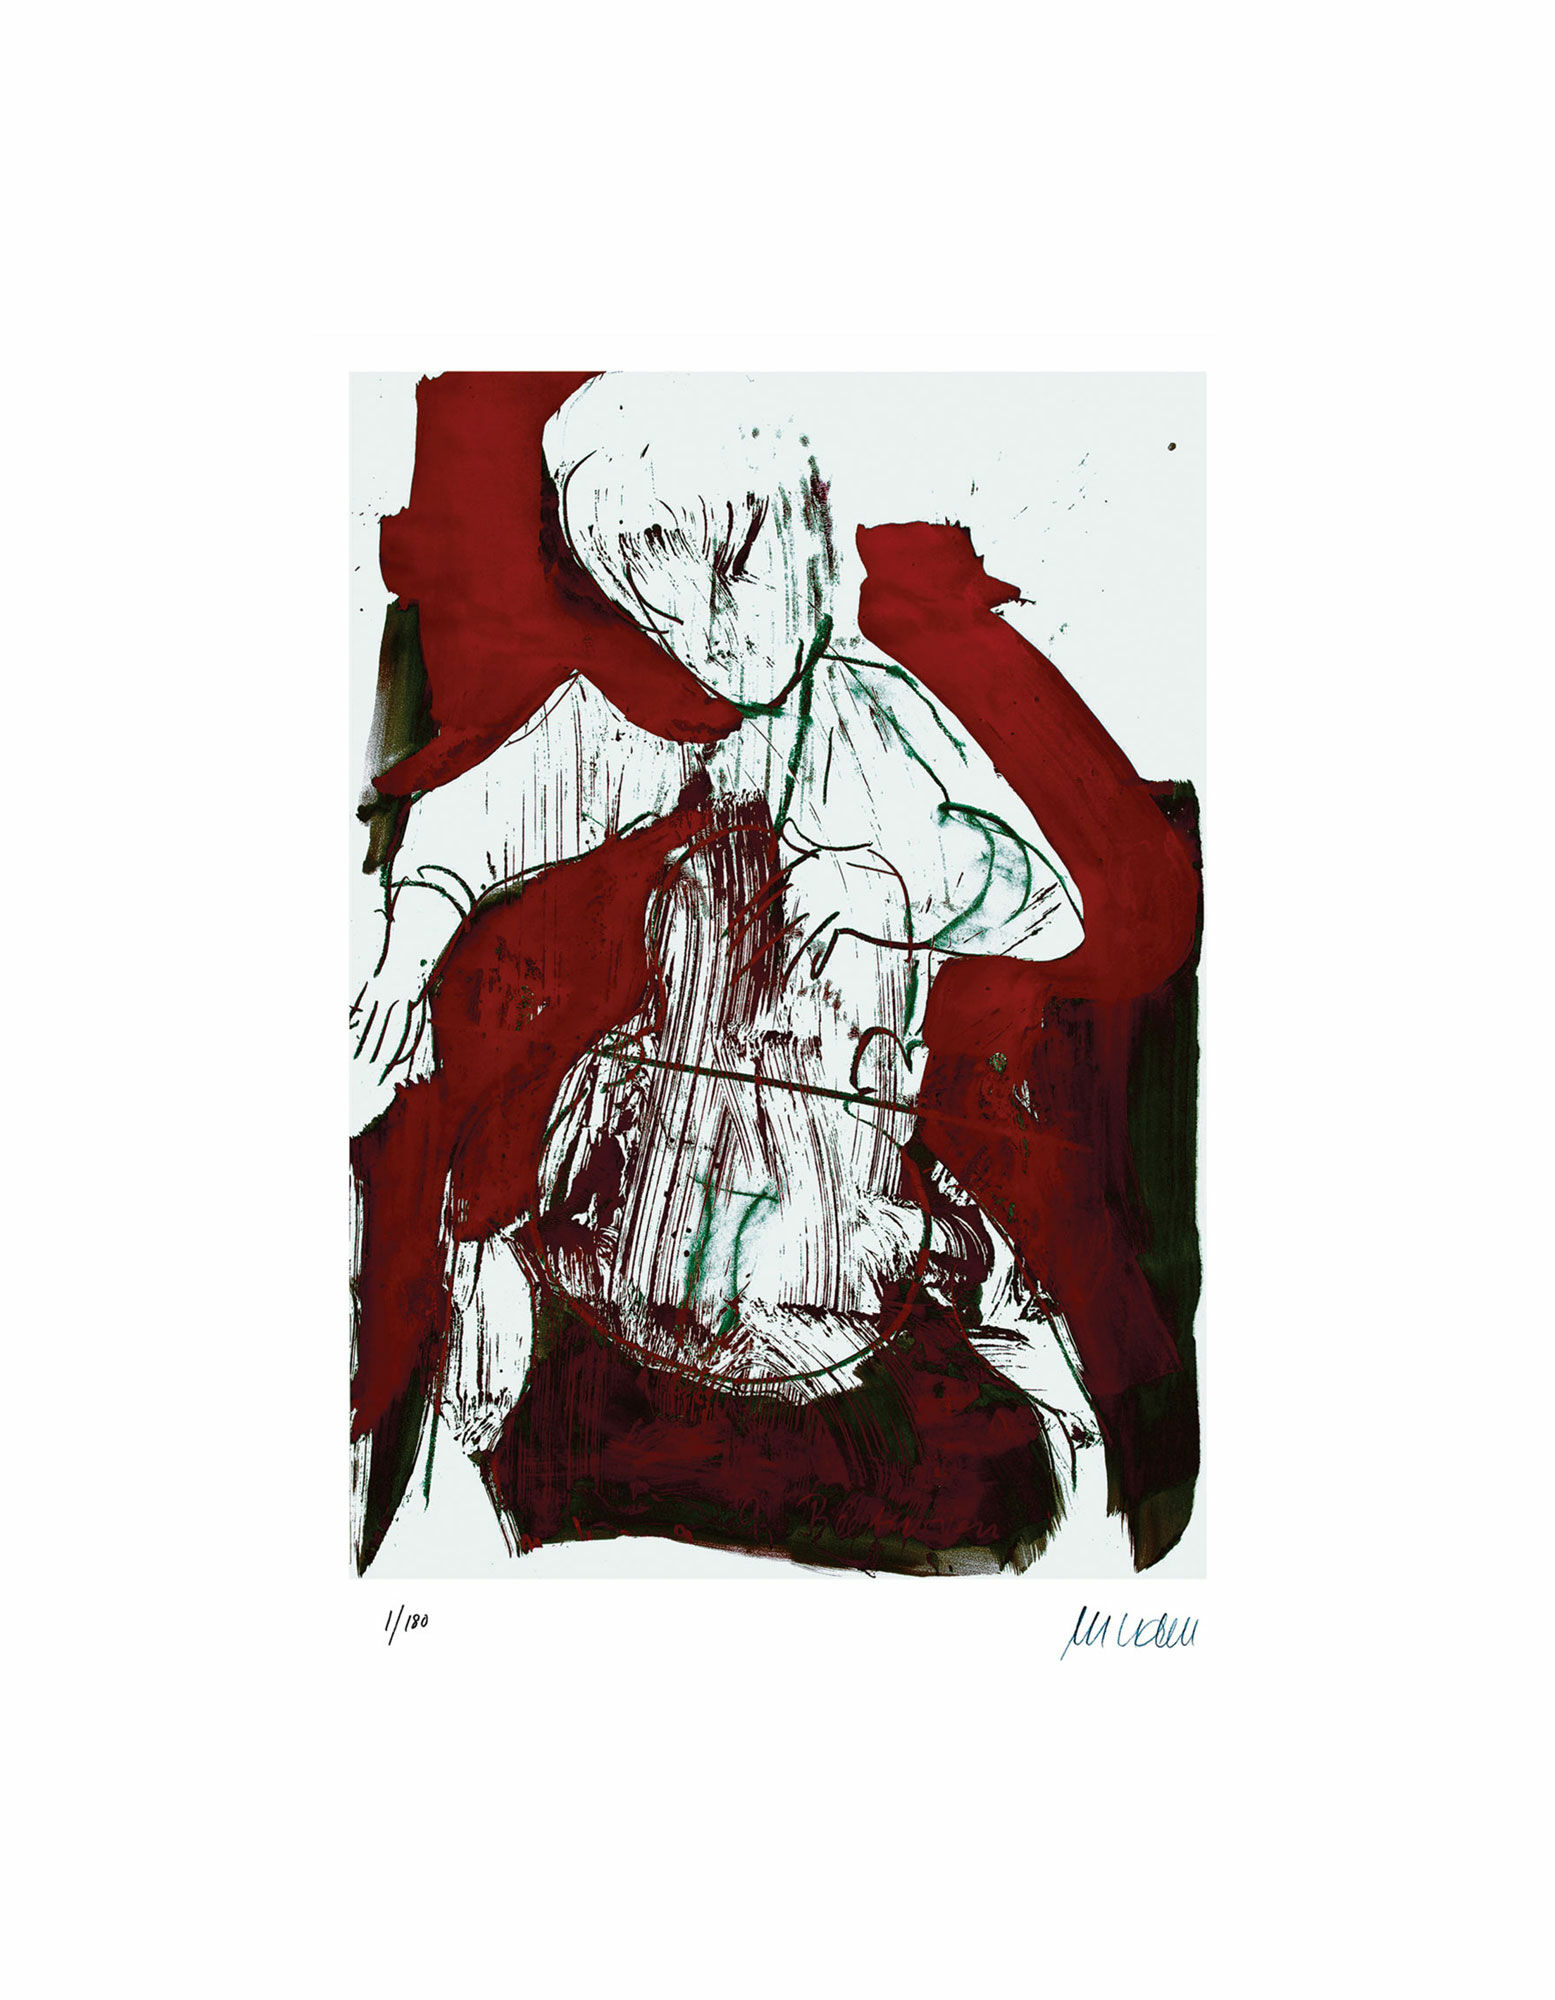 Billede "Cellospiller" (2015), uindrammet von Armin Mueller-Stahl